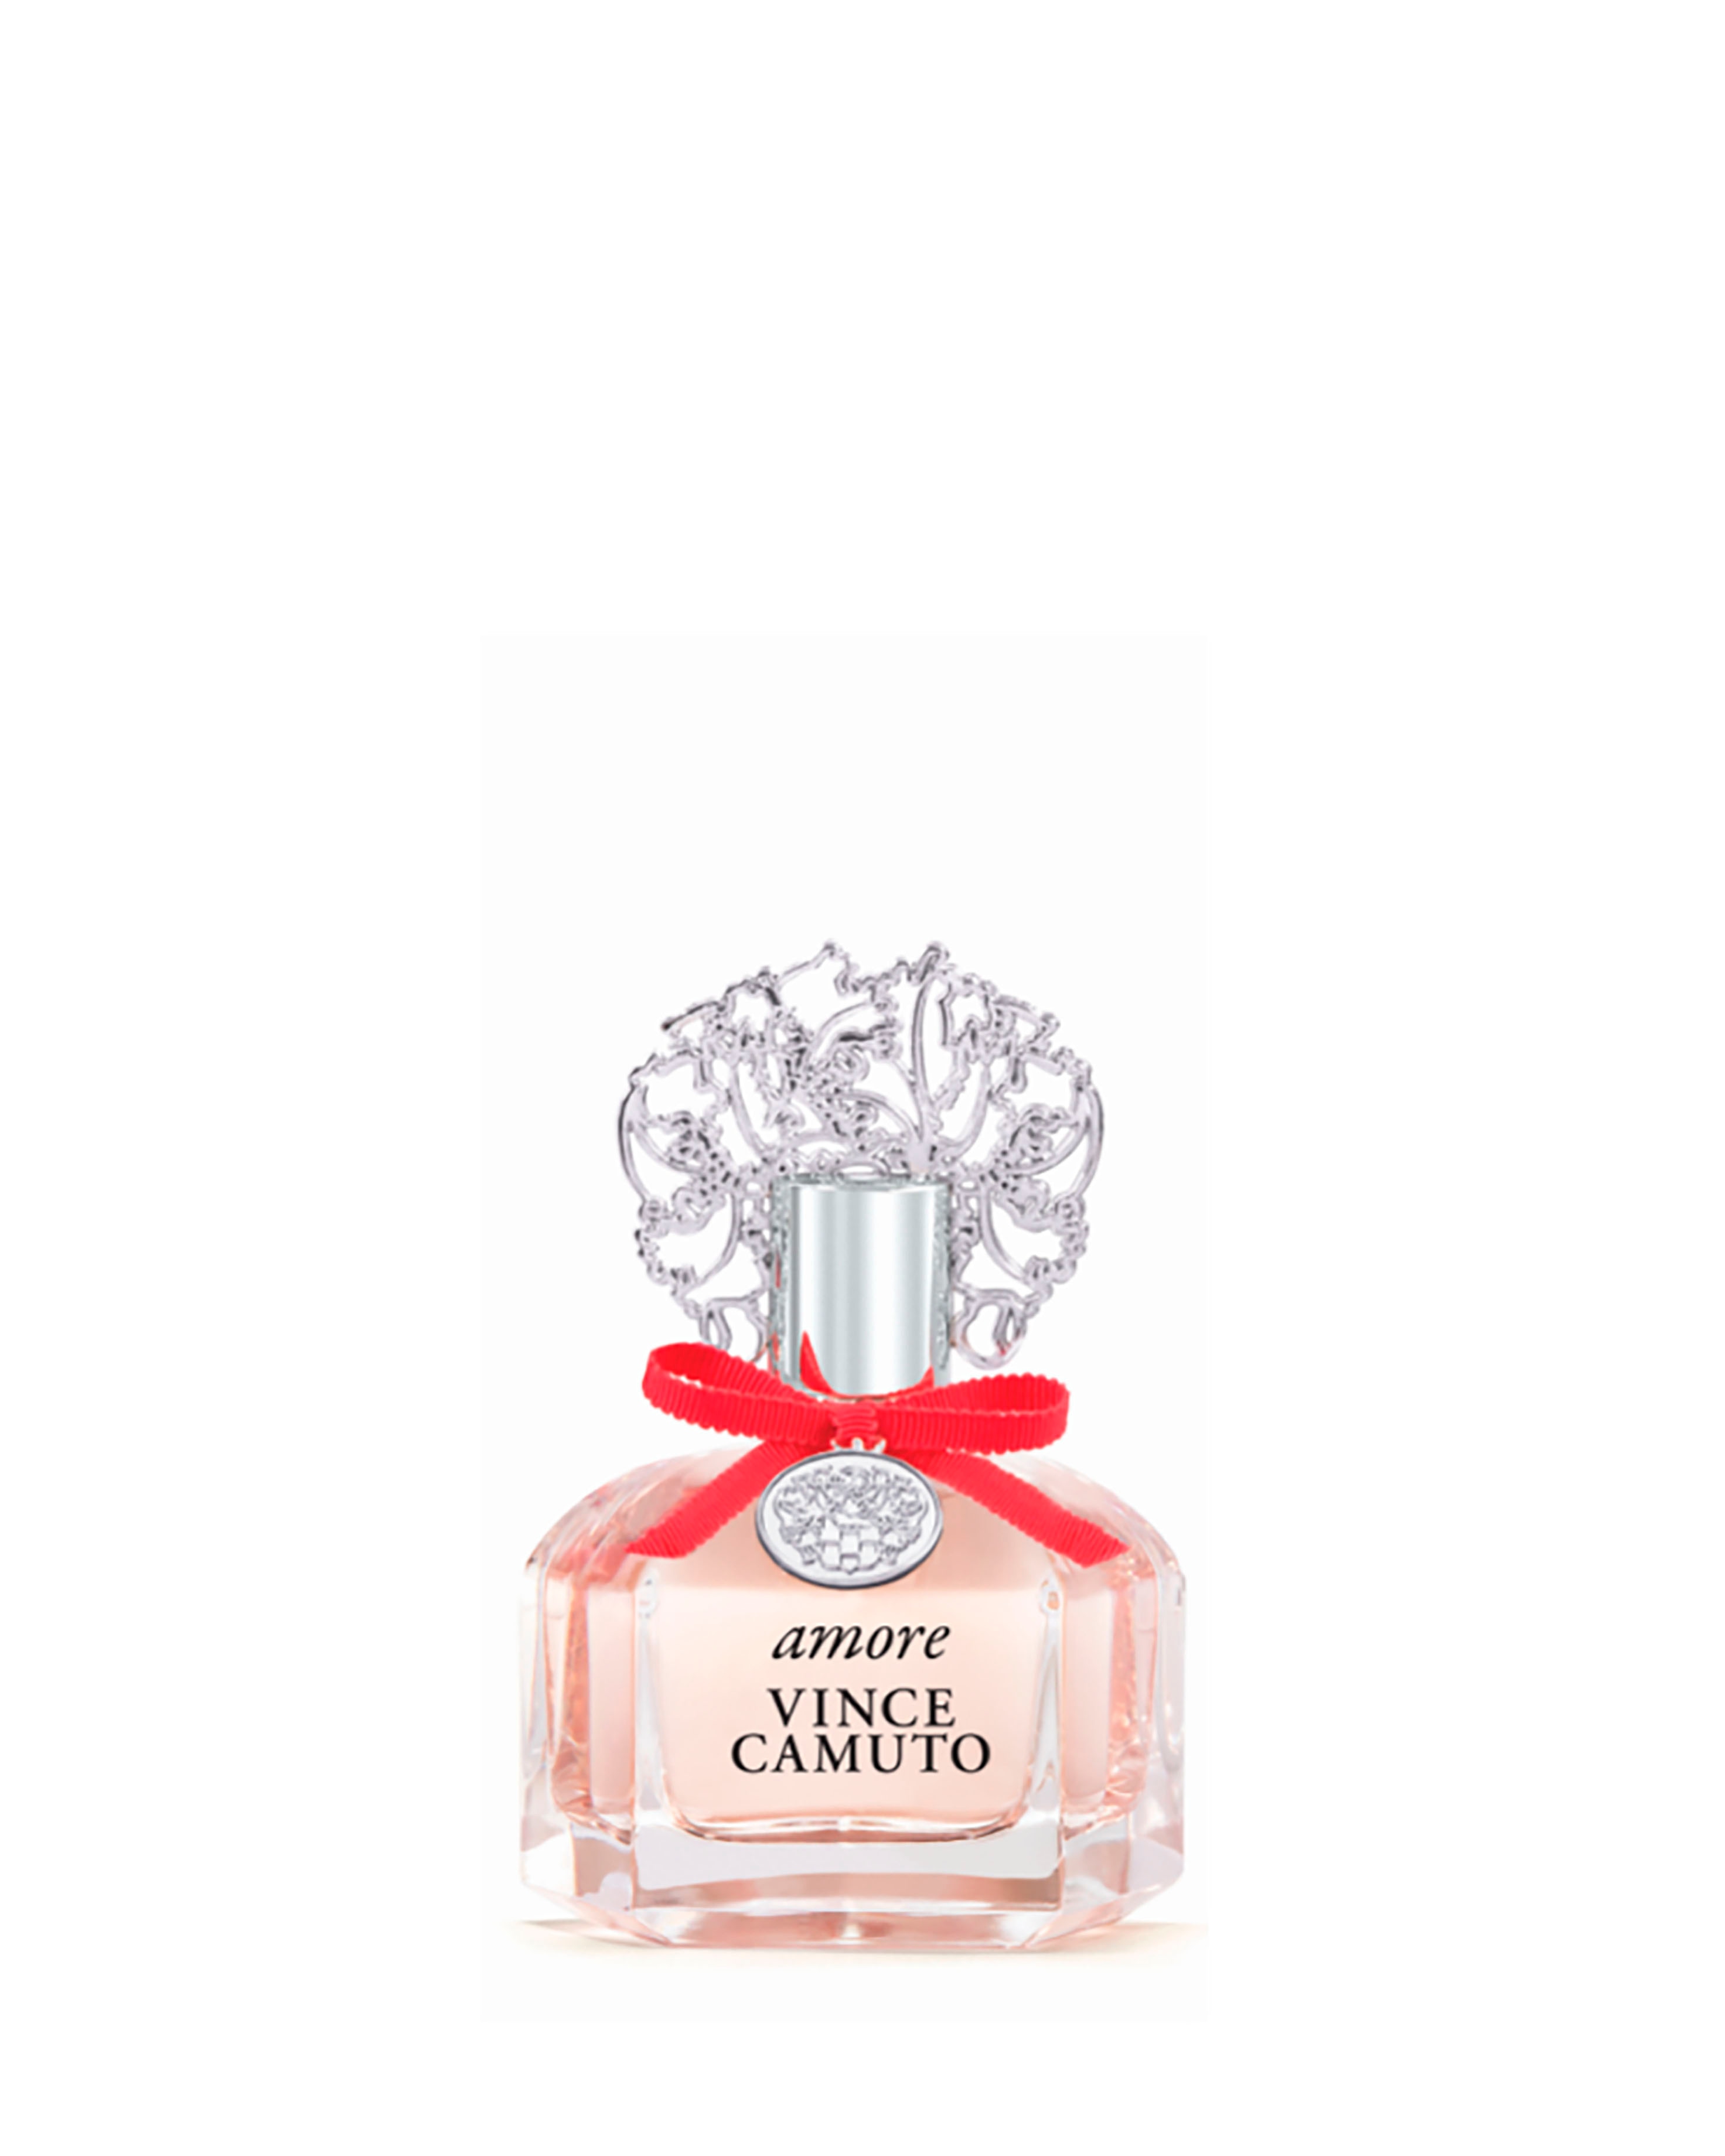 Amore VINCE CAMUTO Eau de Parfum EDP Limited Edition .25oz NIB ~ SHIPs IN  24